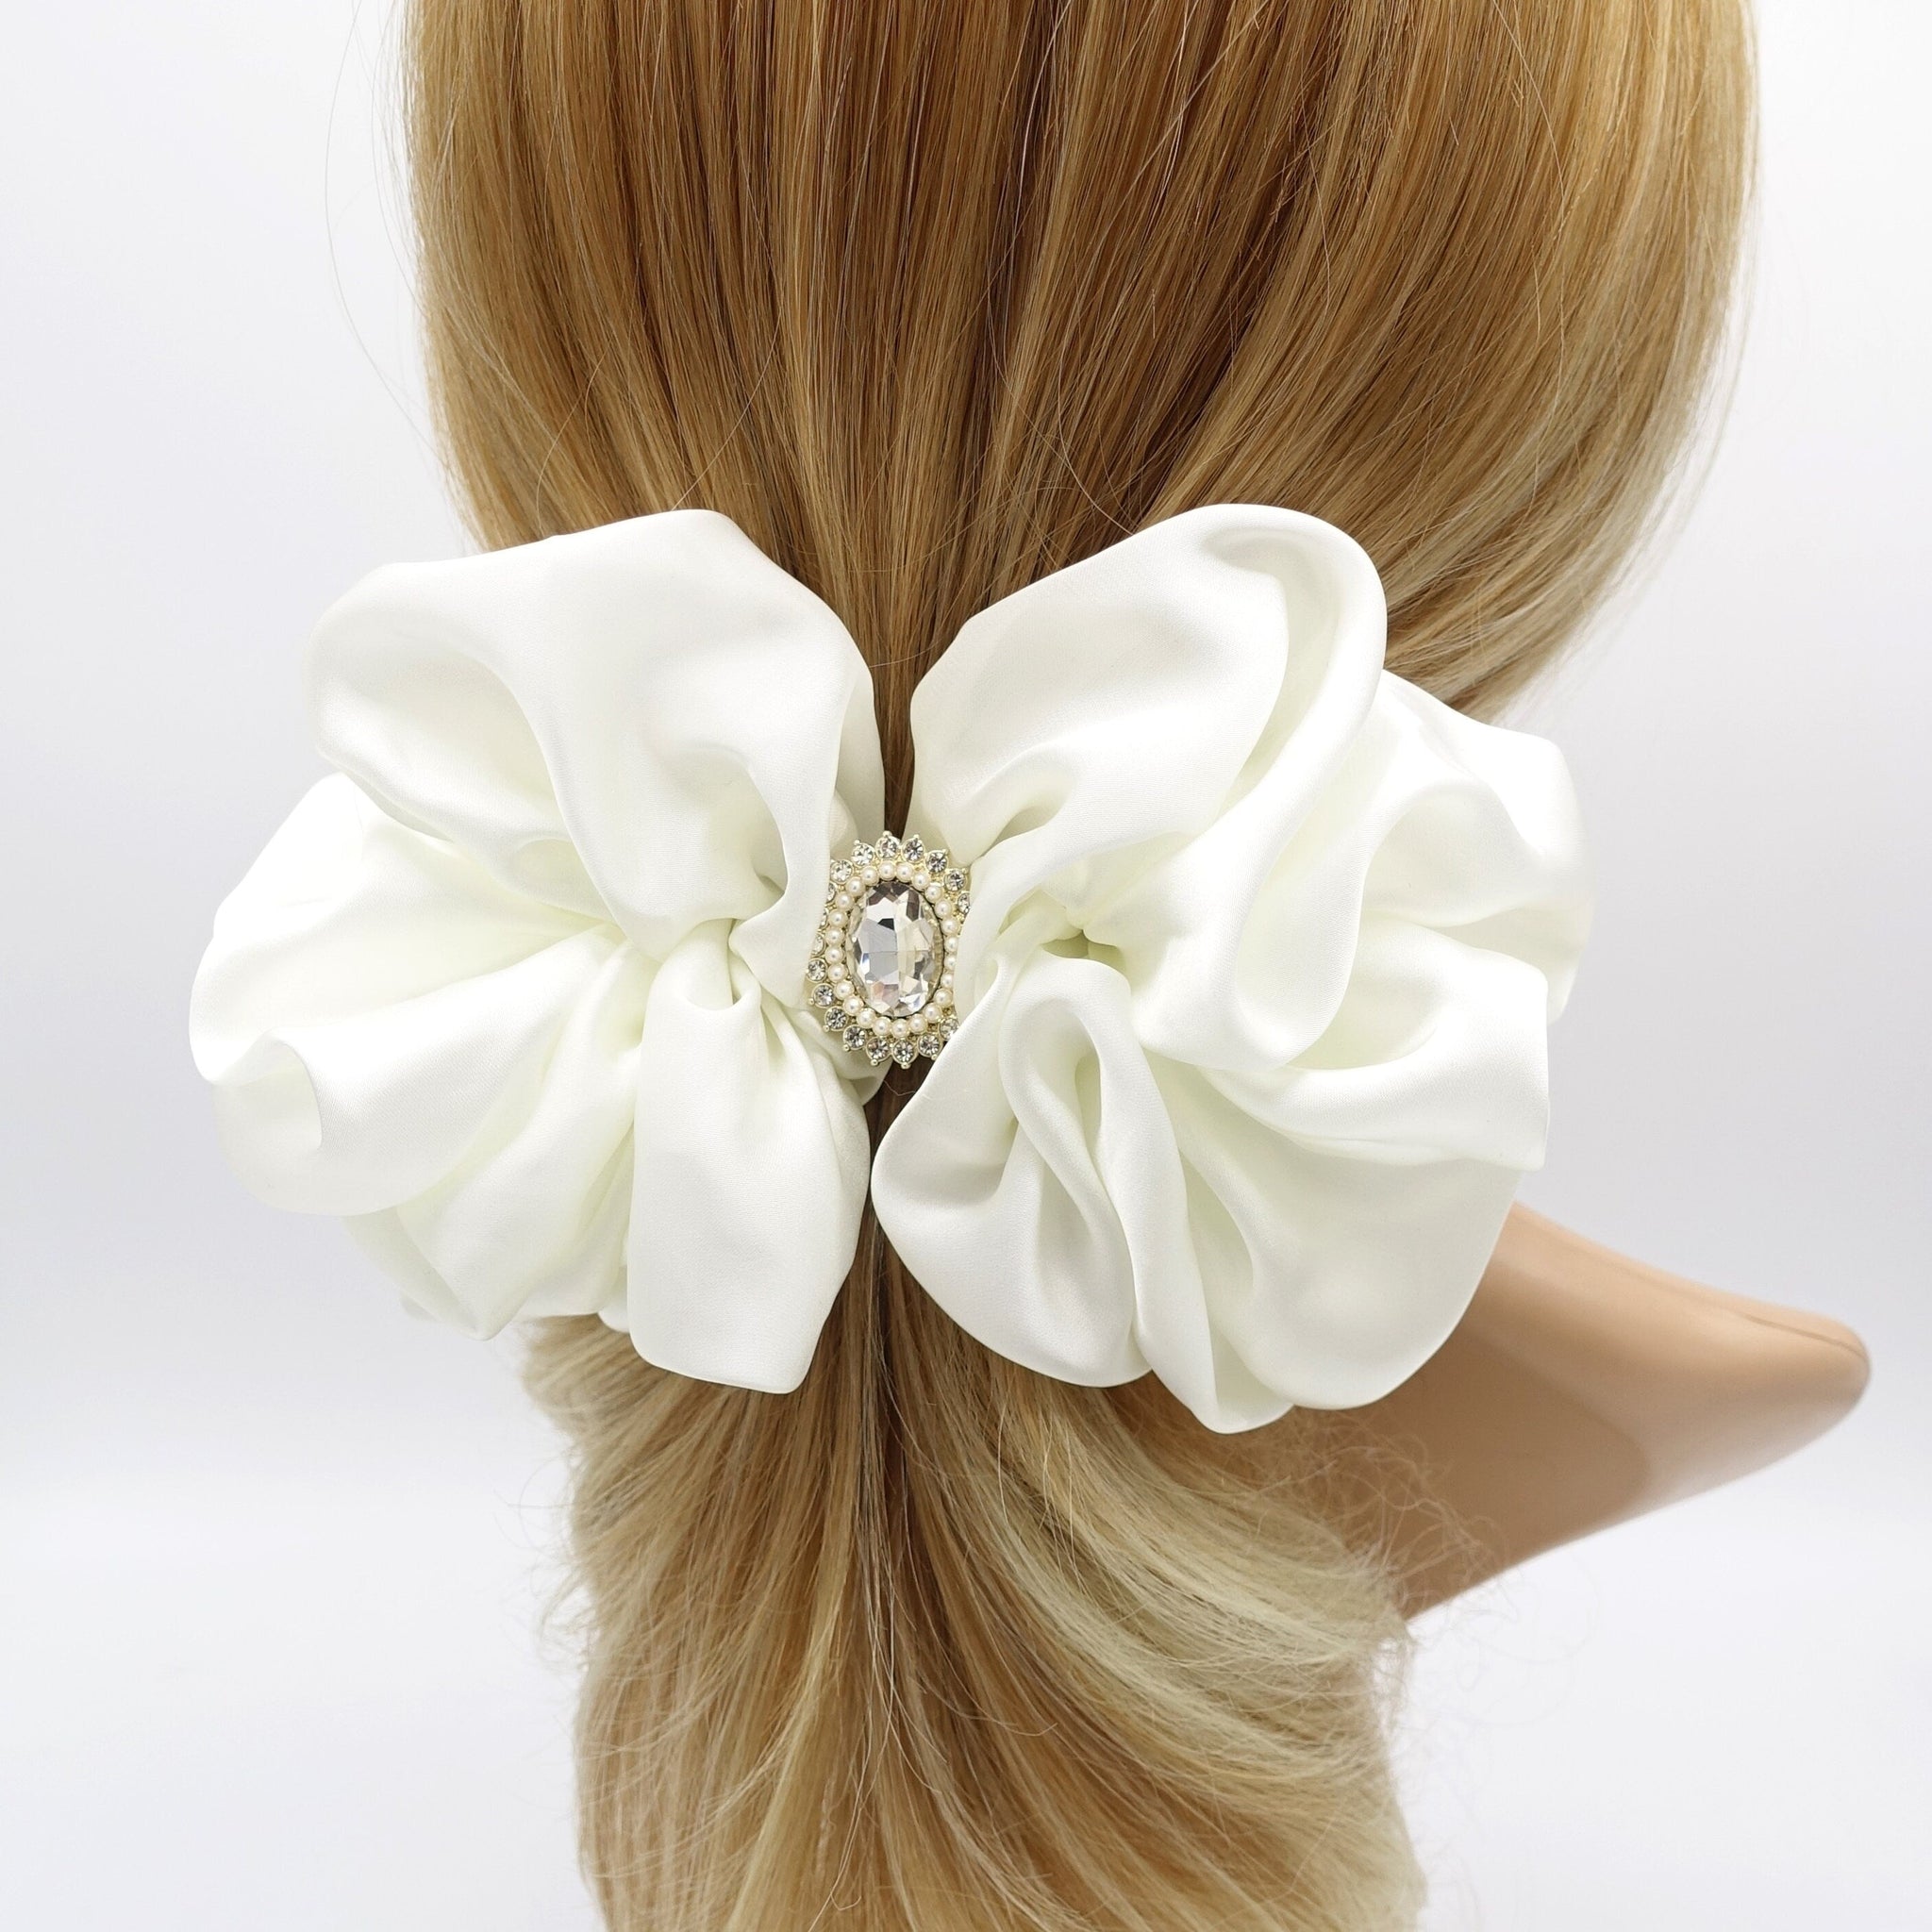 veryshine.com Barrette (Bow) Cream white satin ruffle hair barrette, rhinestone hair barrette for women